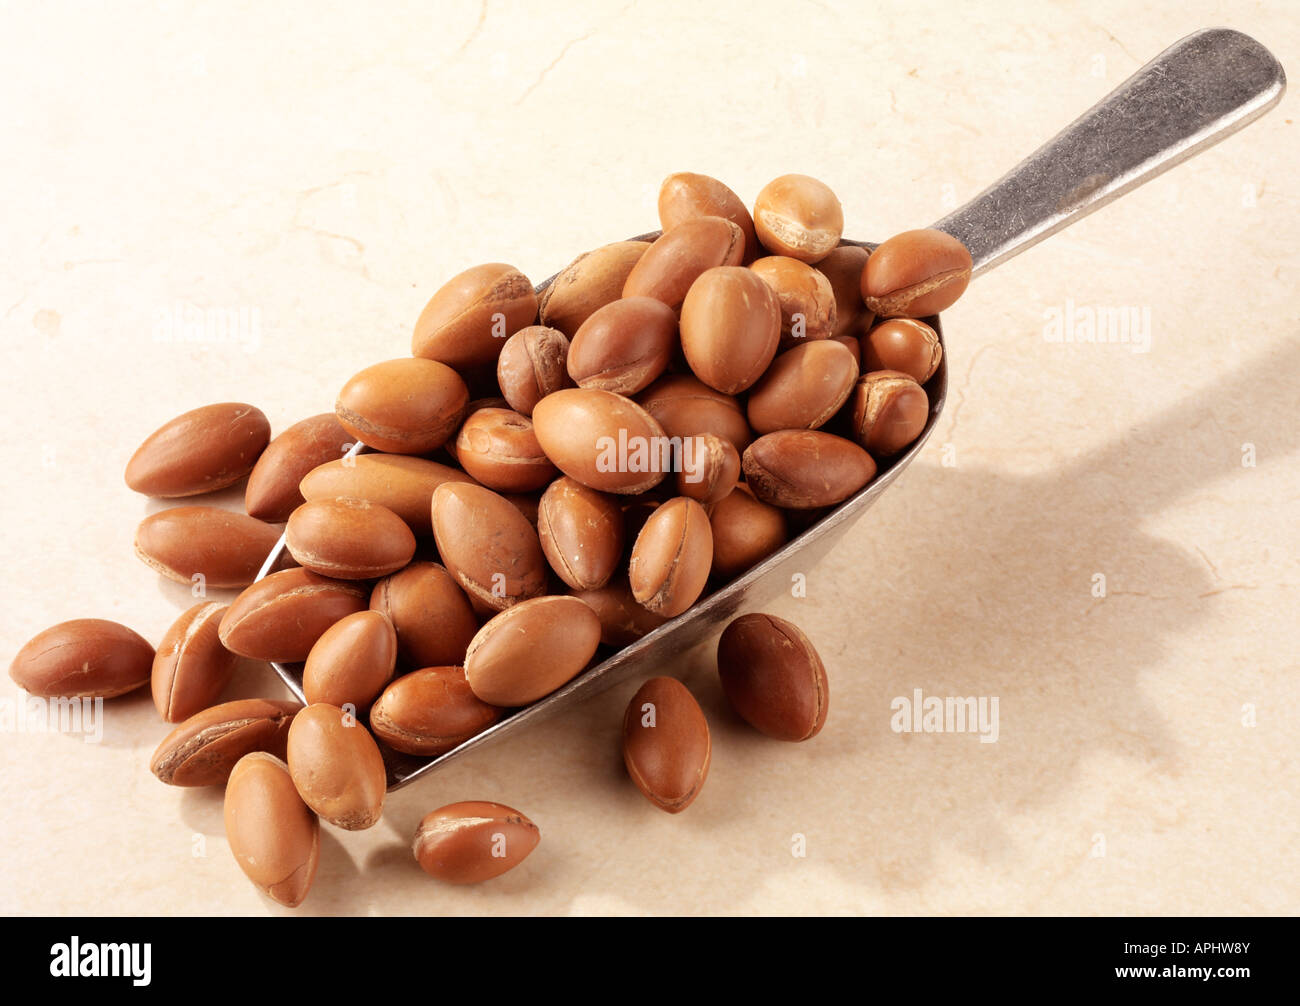 MOROCCAN ARGAN NUTS Stock Photo